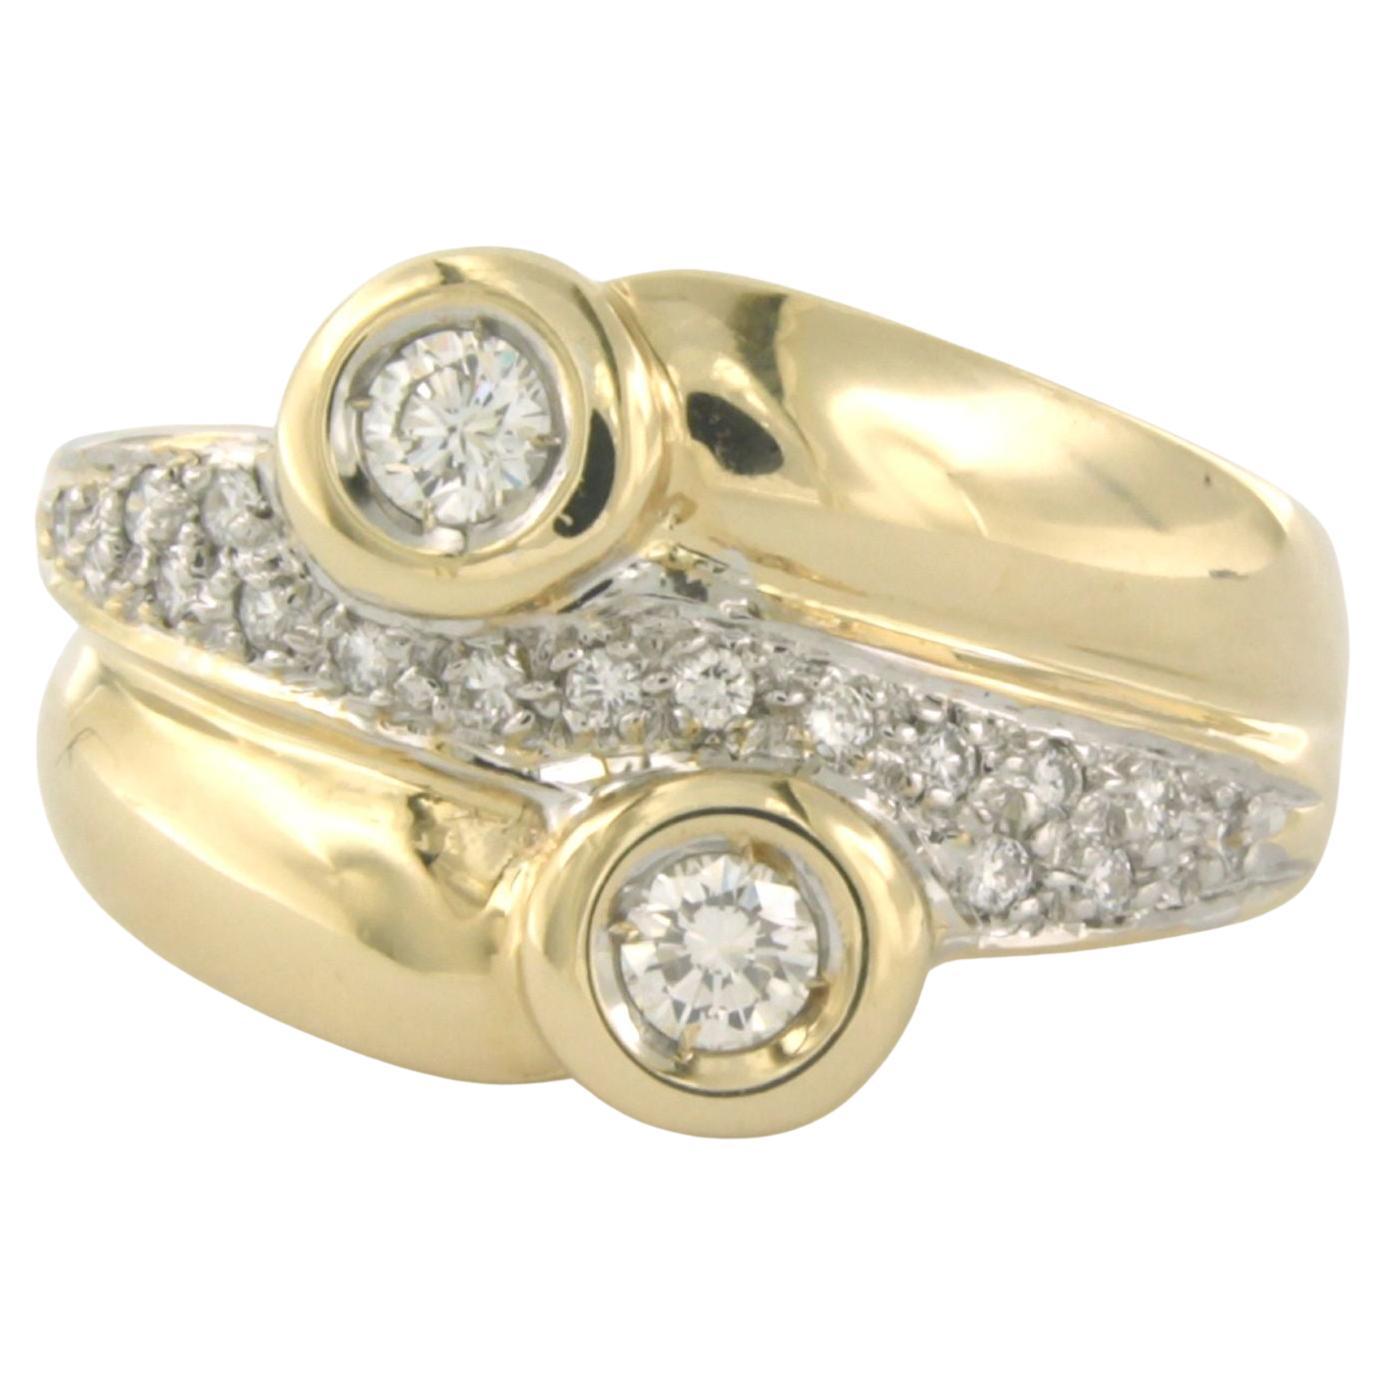 Fashion ring with brilliant cut diamonds 14k bicolour gold